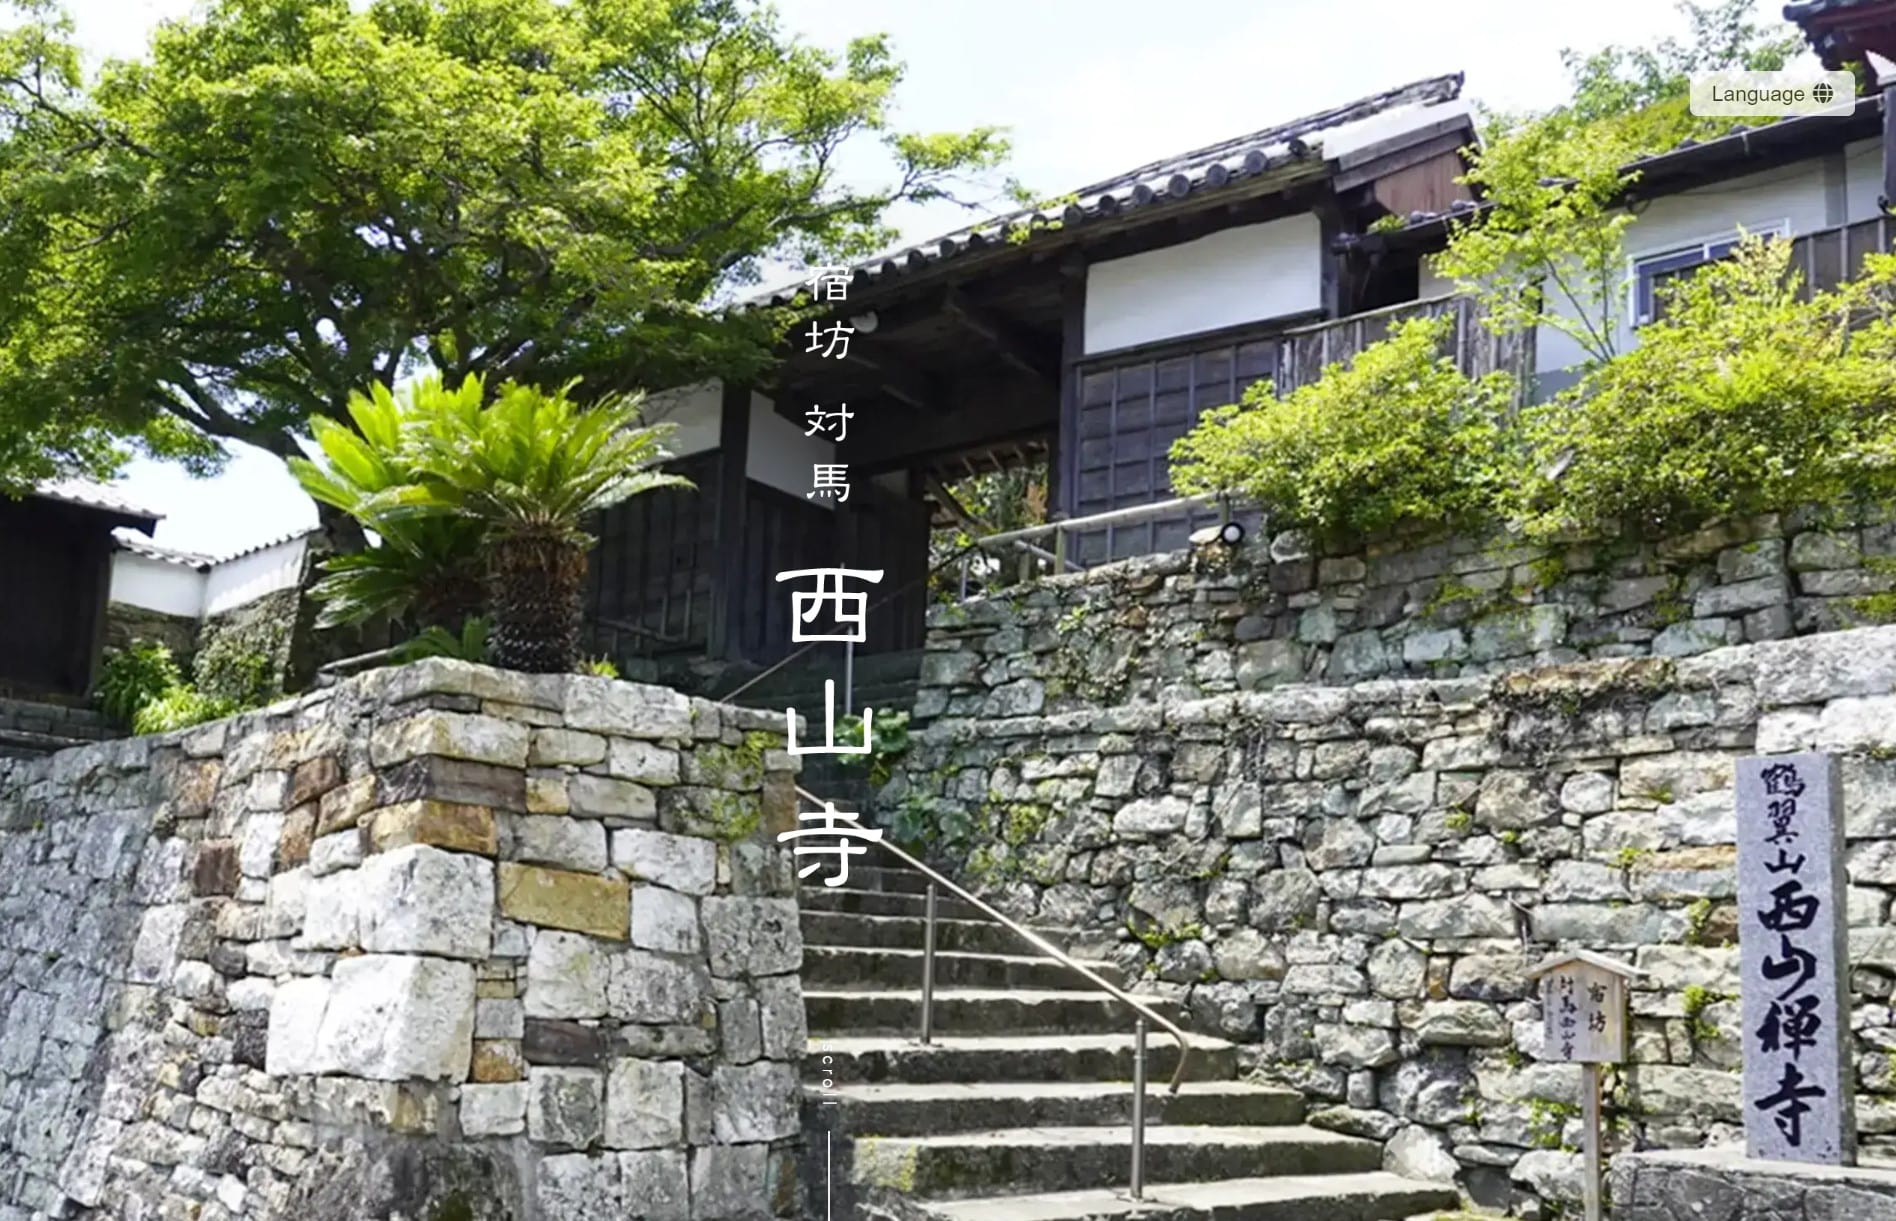 Seizanji Temple